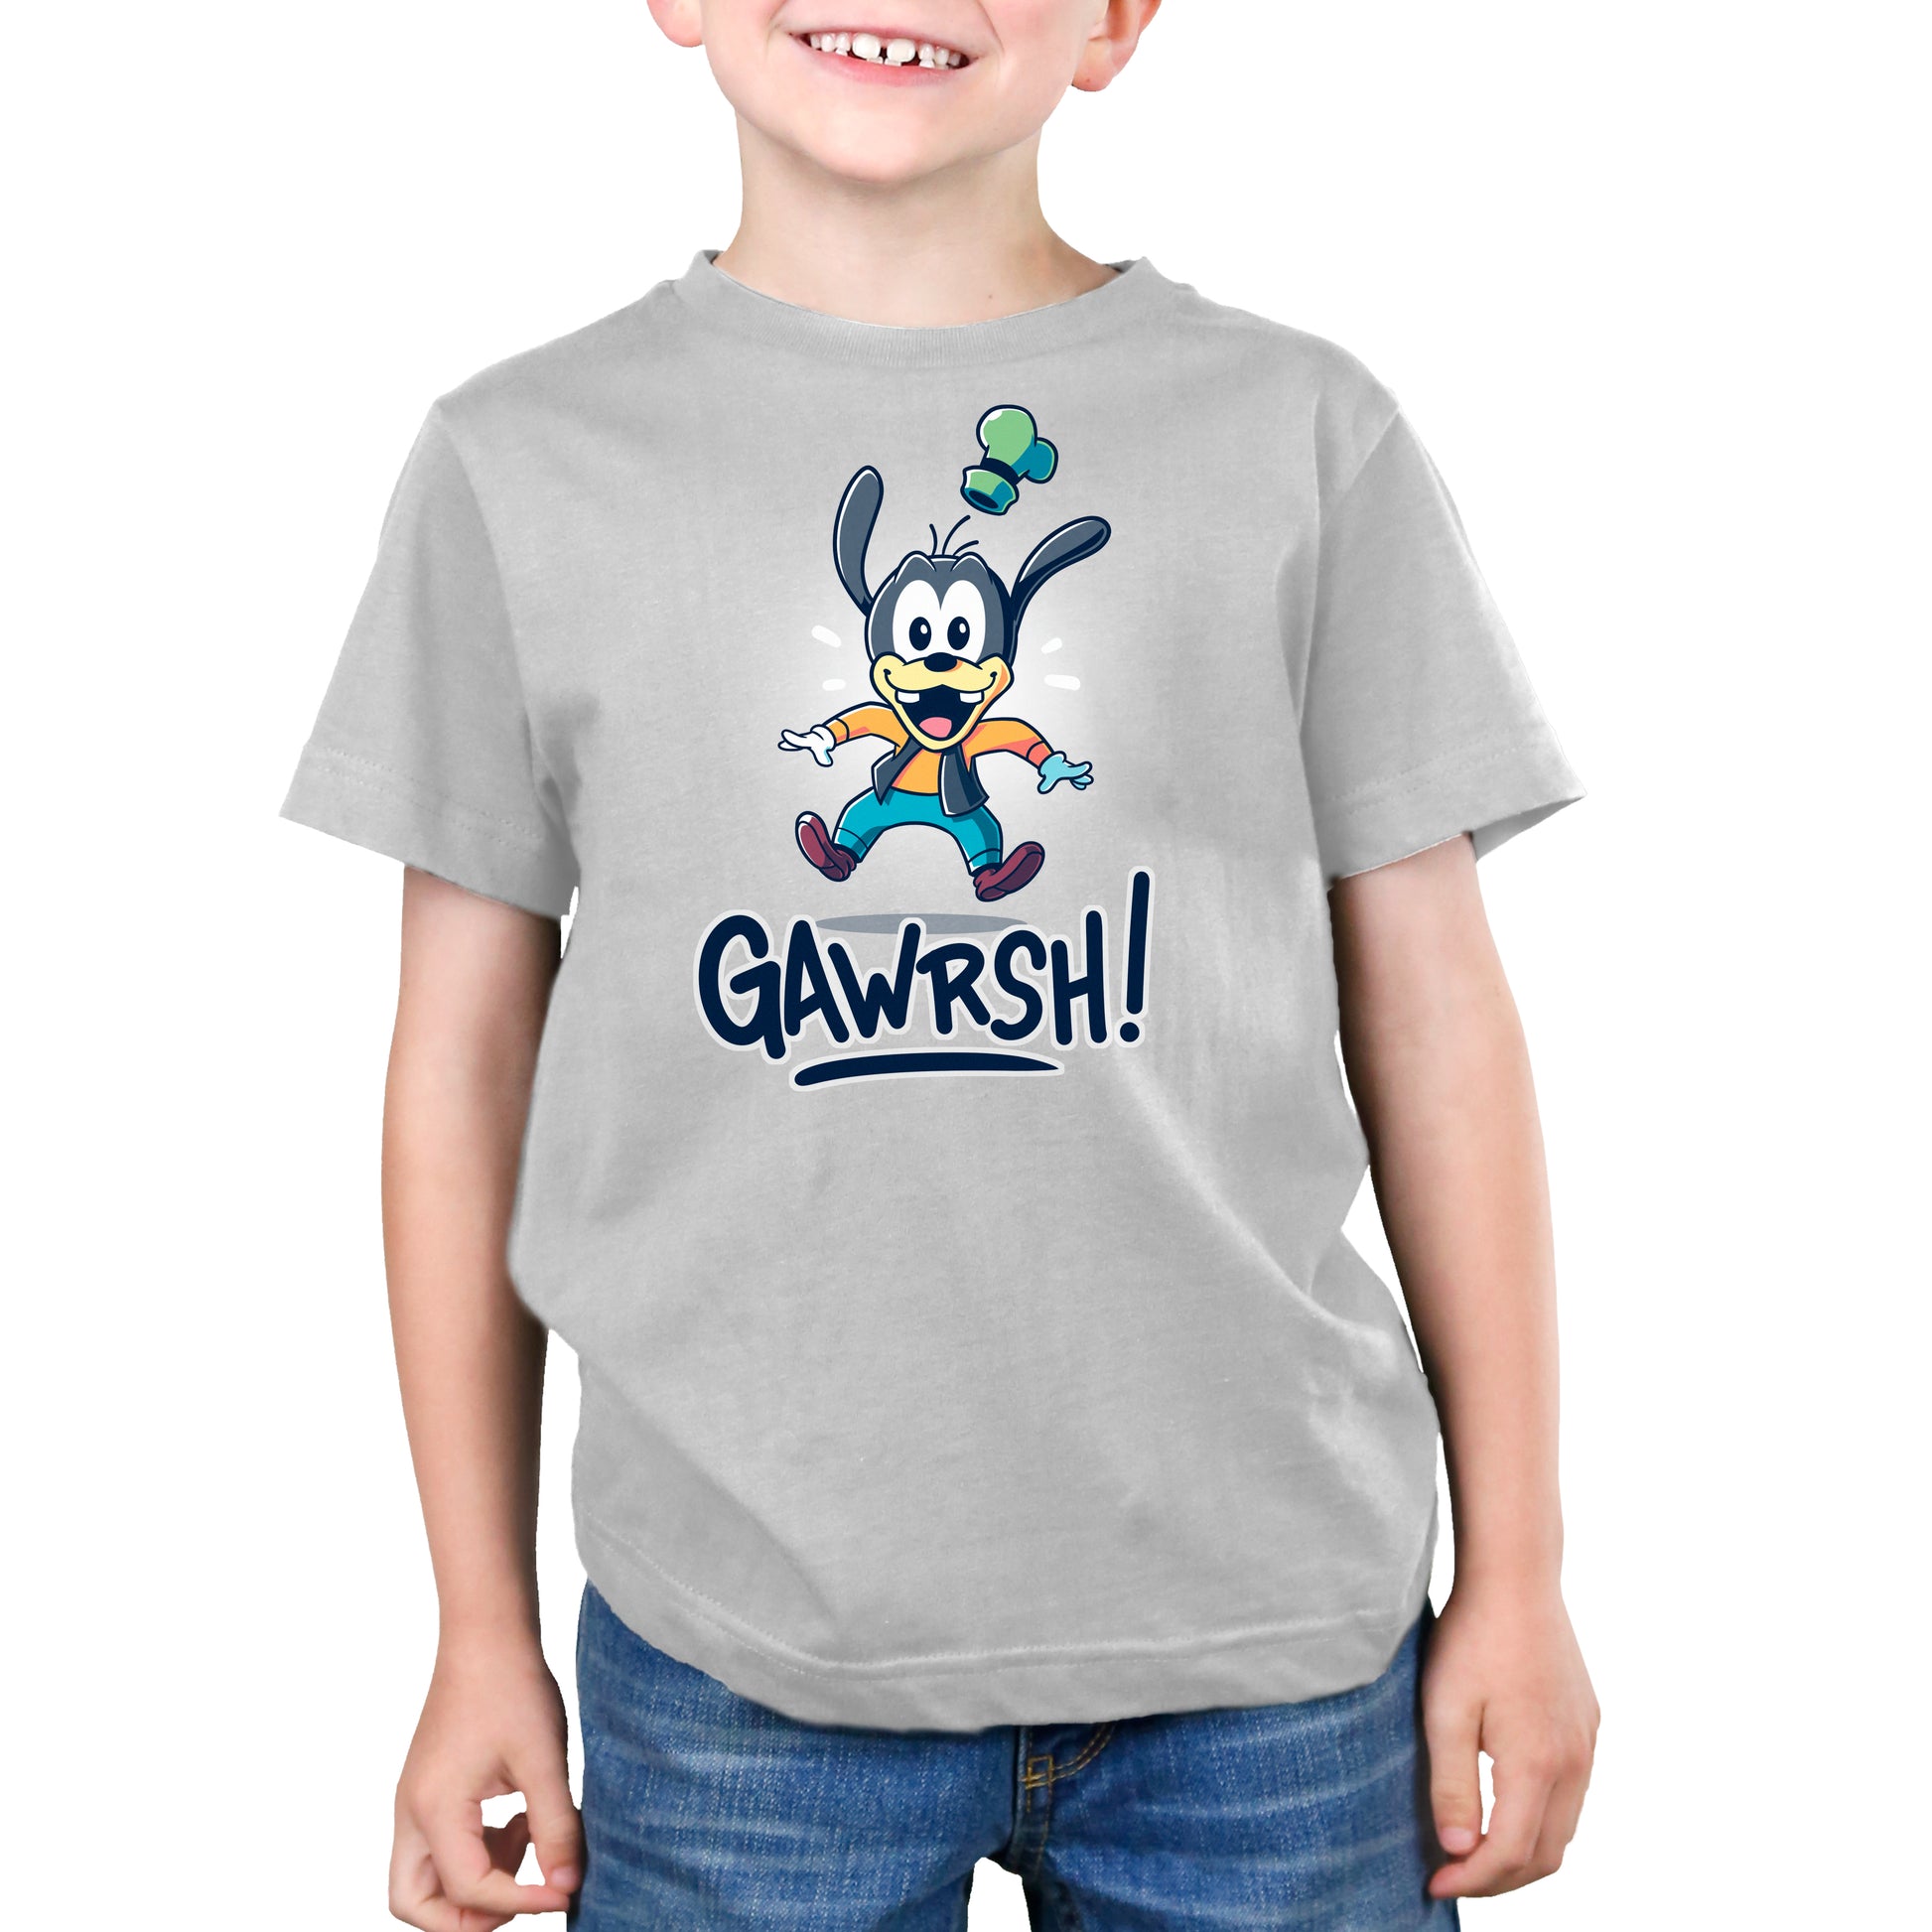 A young boy wearing a Disney Gawrsh! T-shirt.